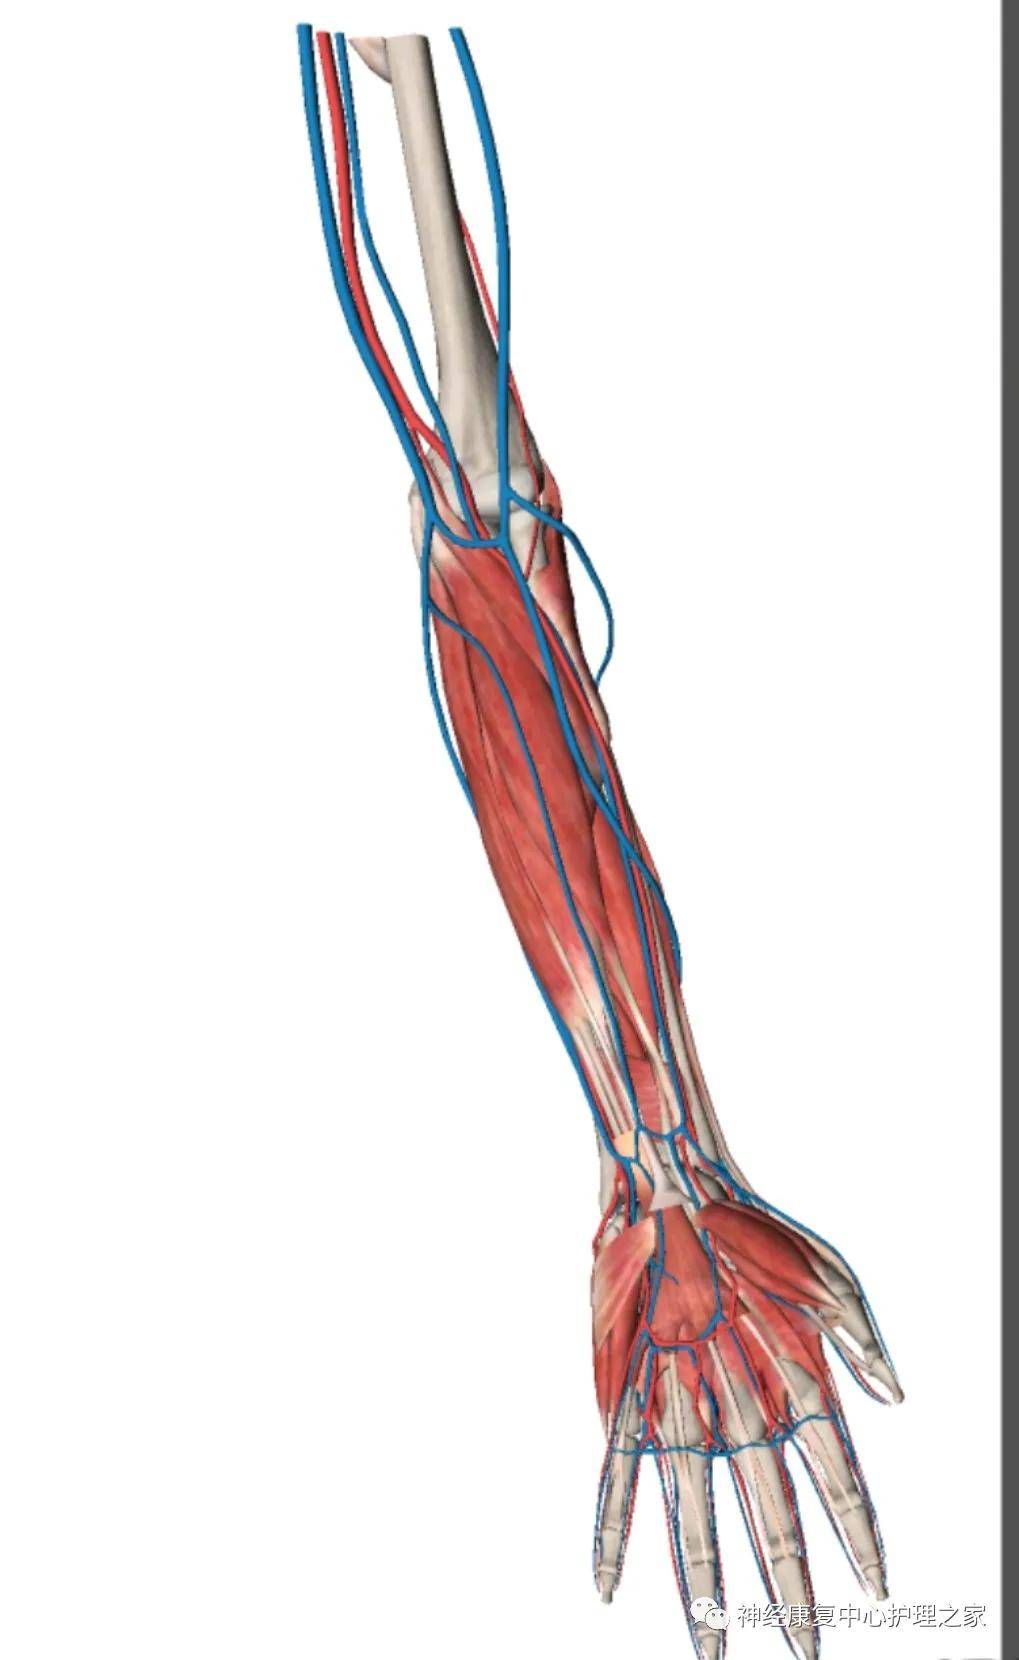 上臂静脉血管解剖图谱图片